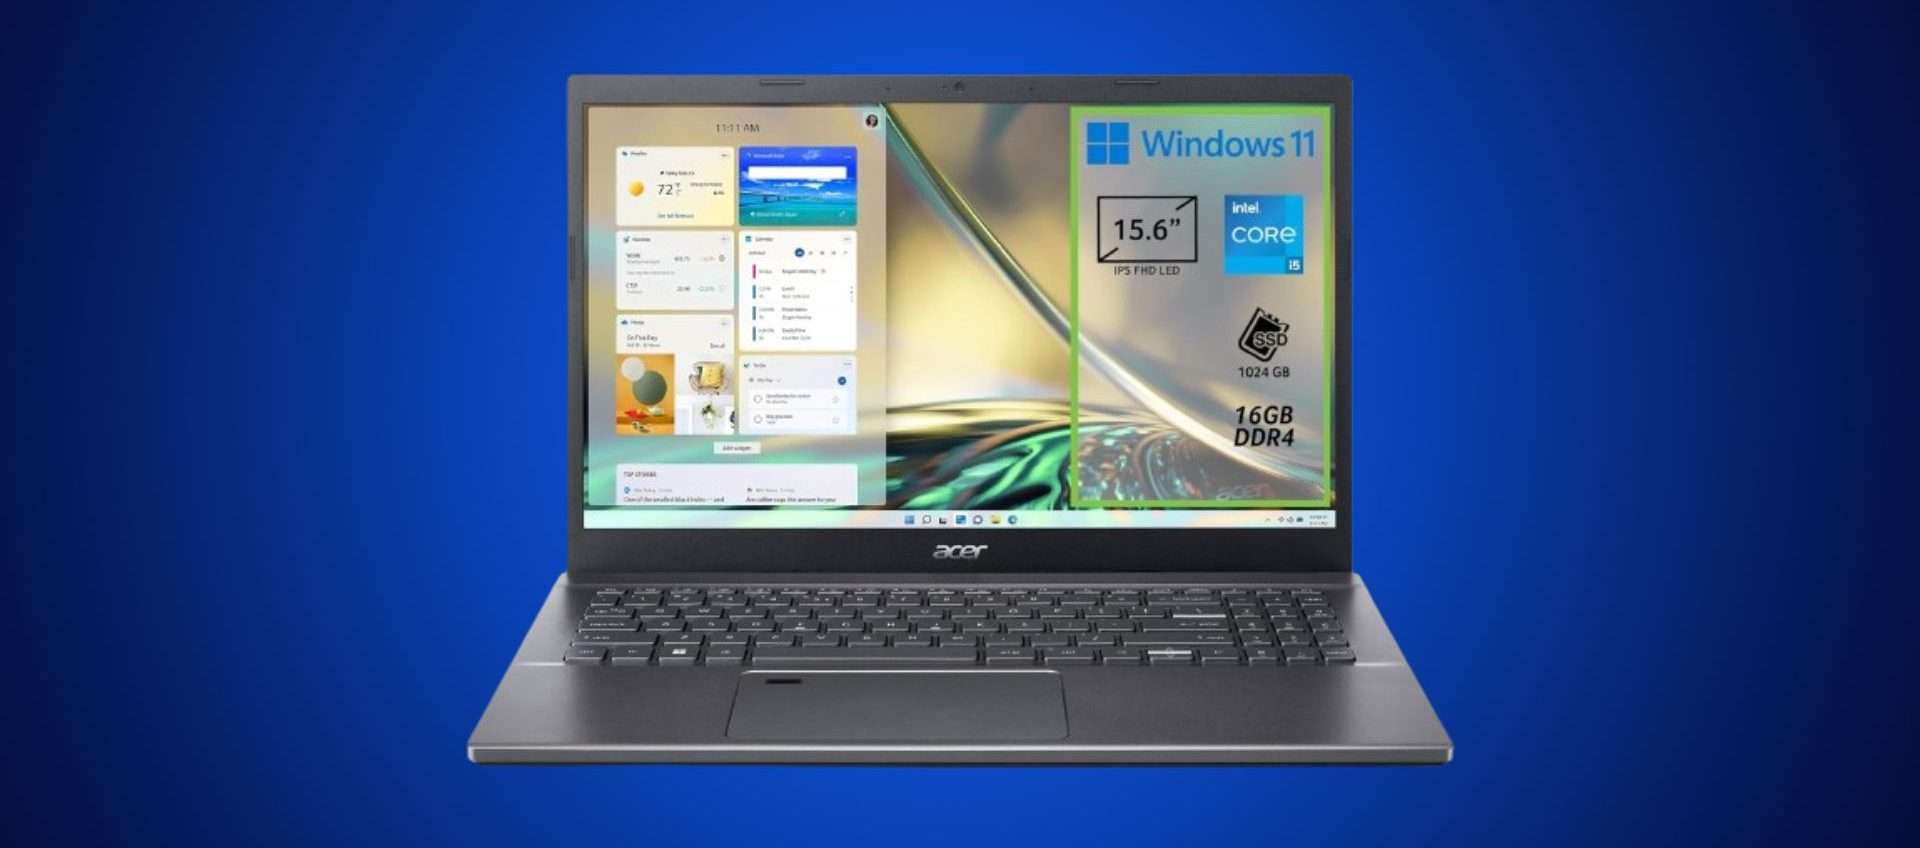 Acer Aspire 5, prezzo bomba: oggi lo paghi meno di 600€ (anche a rate)